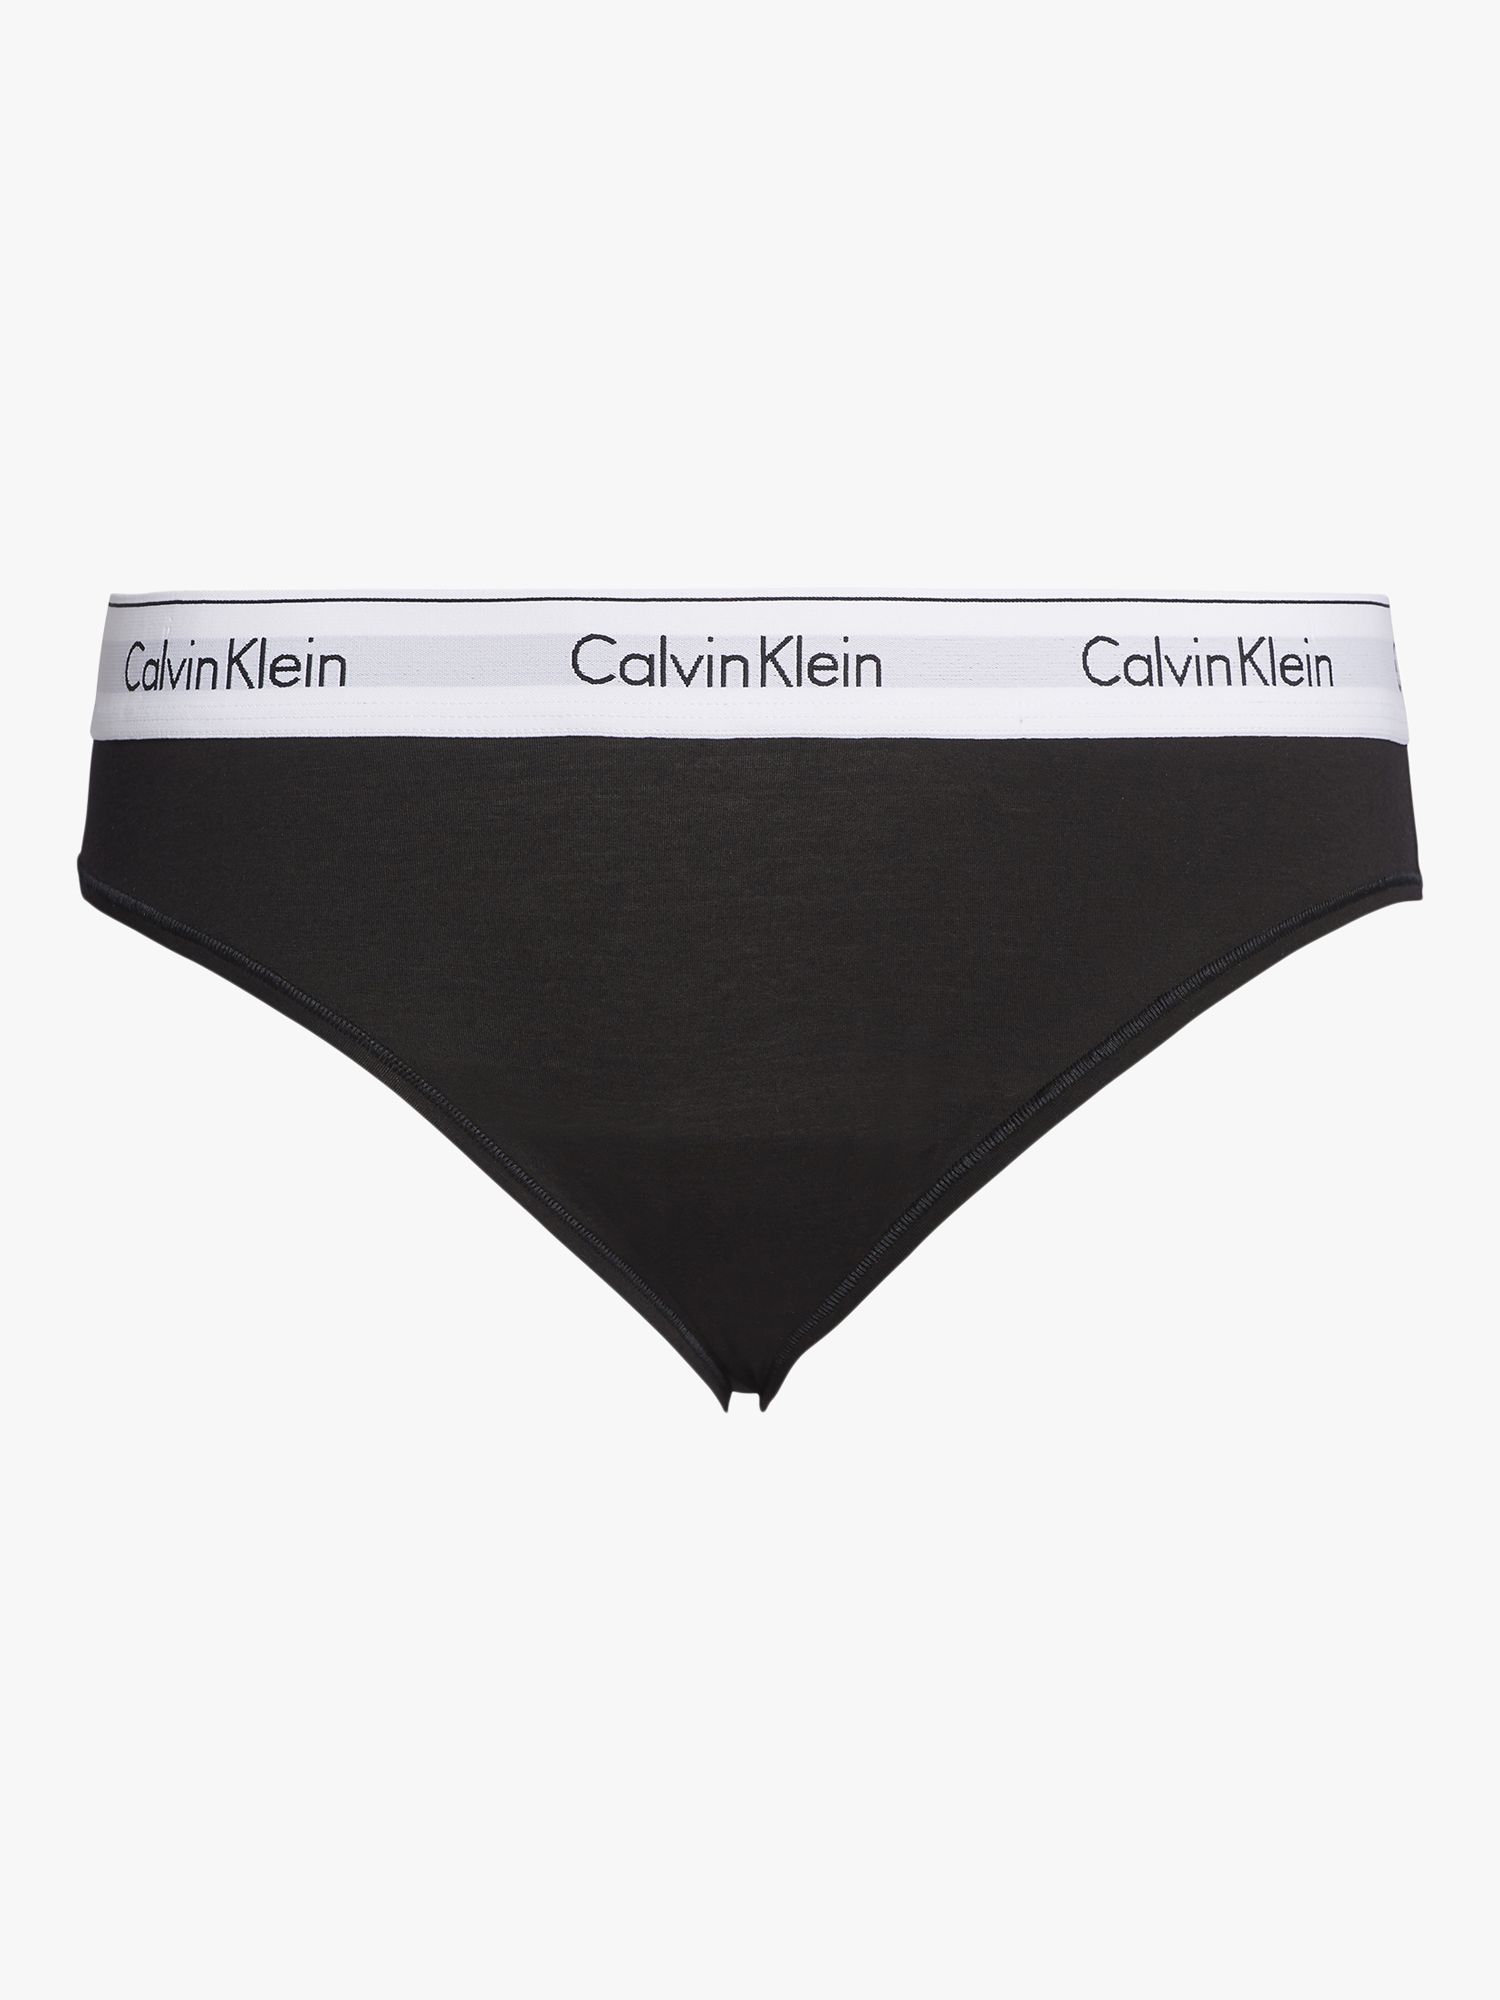 Calvin Klein dames Modern Cotton slip, wit